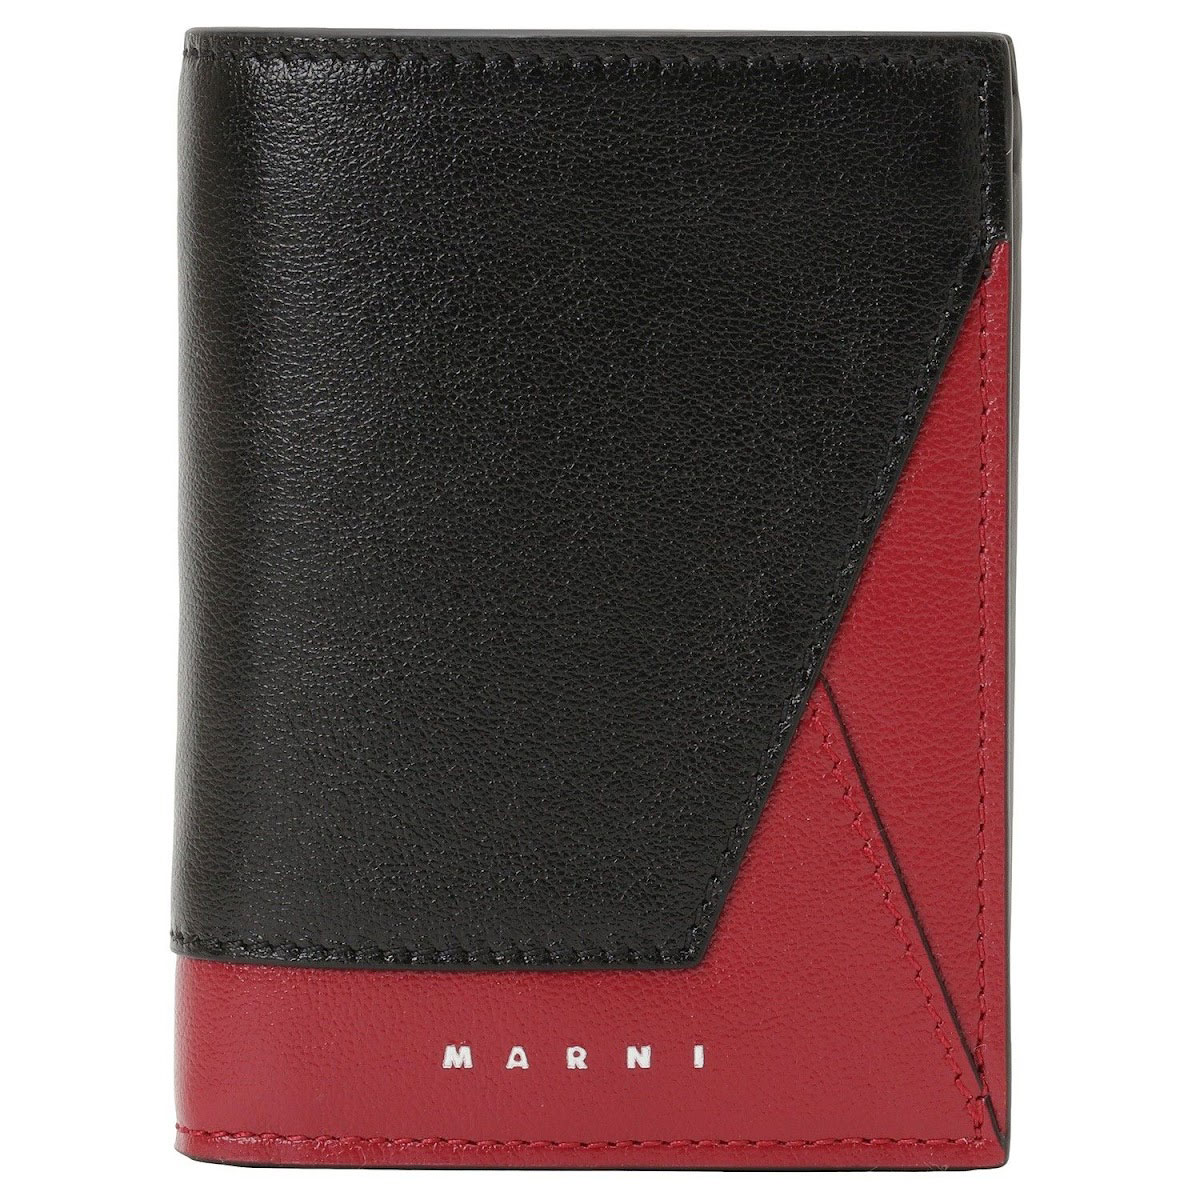 マルニ MARNI 二つ折り財布 PFMI0051U0 P2644 Z590N カラーブロック 小銭入れ付き ミニ財布 メンズ ブラック+レッドミニ財布 使いやすい